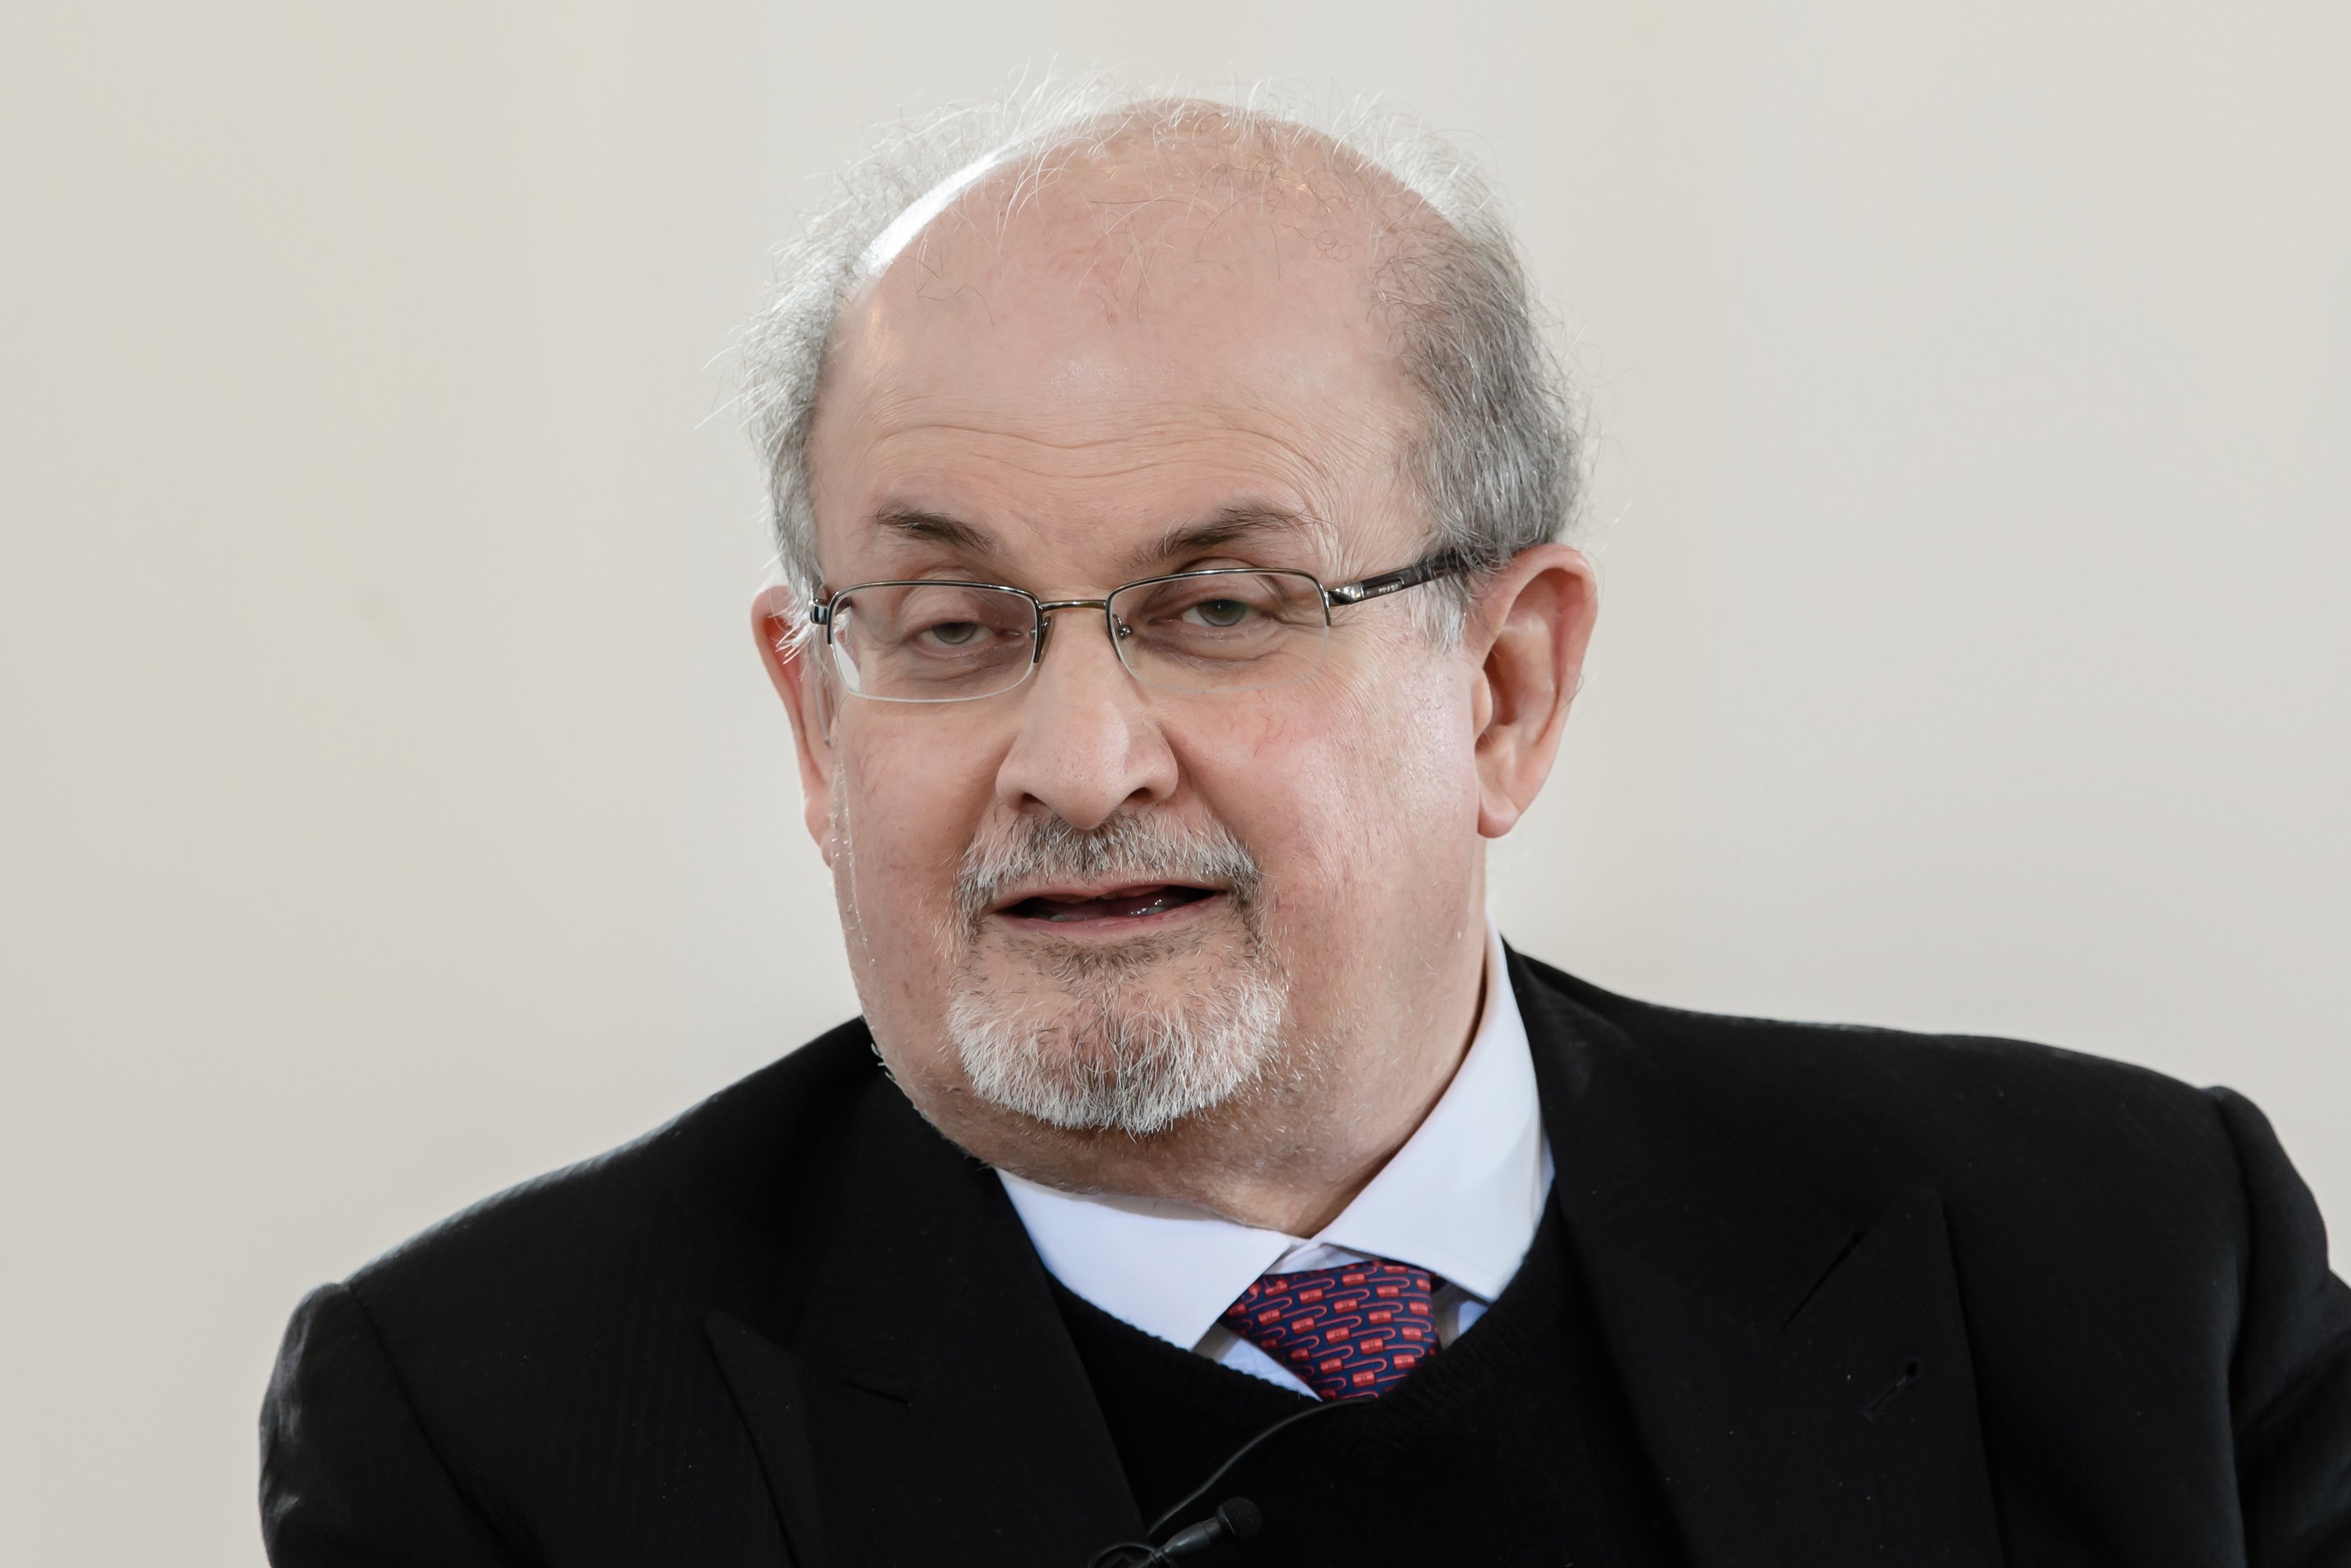 El estado de Salman Rushdie es muy grave: sobrevive con respiración asistida y podría perder un ojo